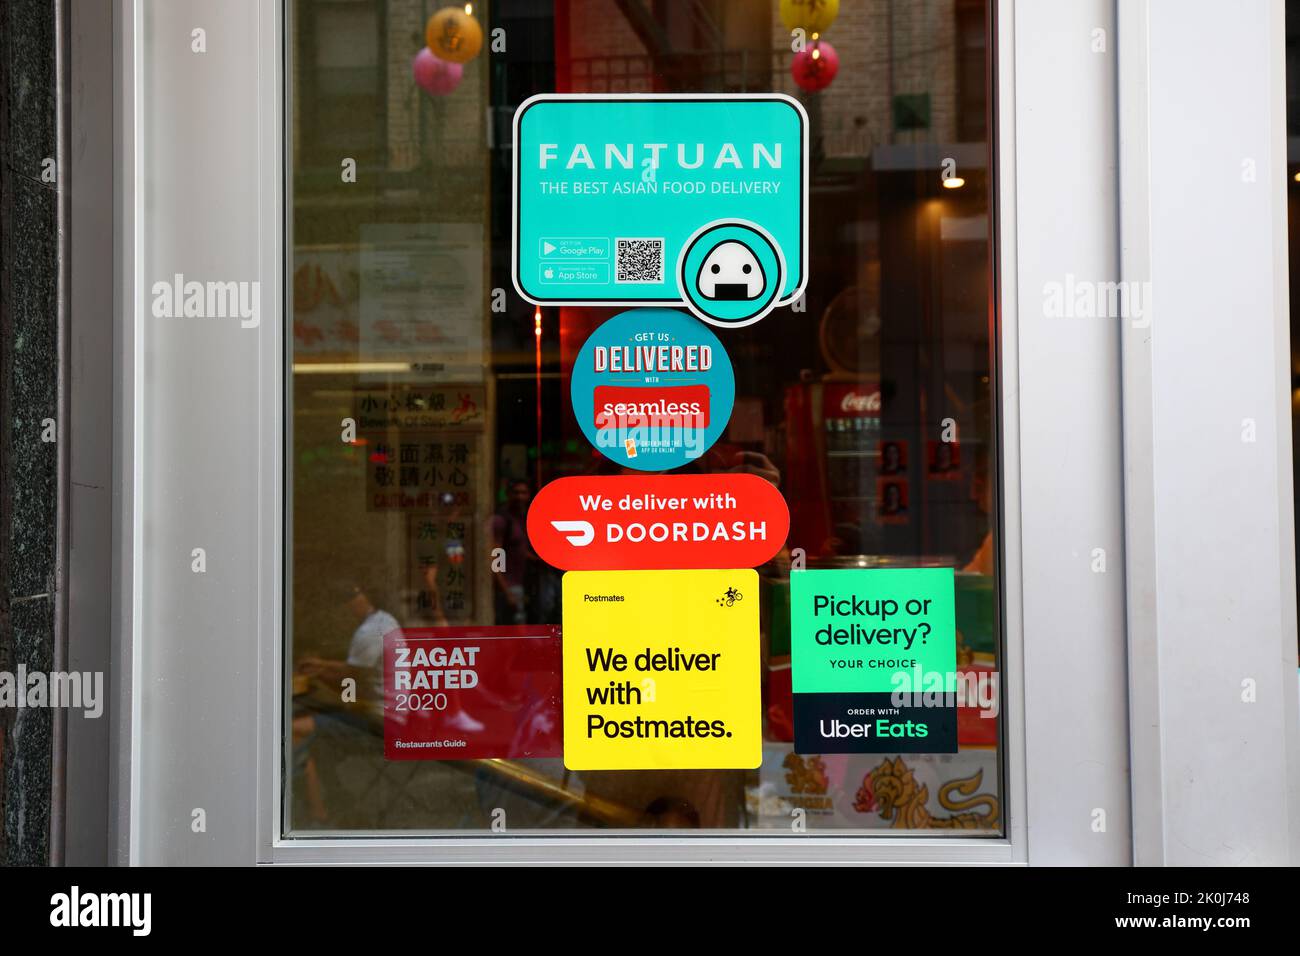 Fantuan Delivery, Seamless, Doordash, Postmates, e Uber mangia gli adesivi delle app per il servizio di consegna del cibo sulla porta di un ristorante a Chinatown, New York. Foto Stock